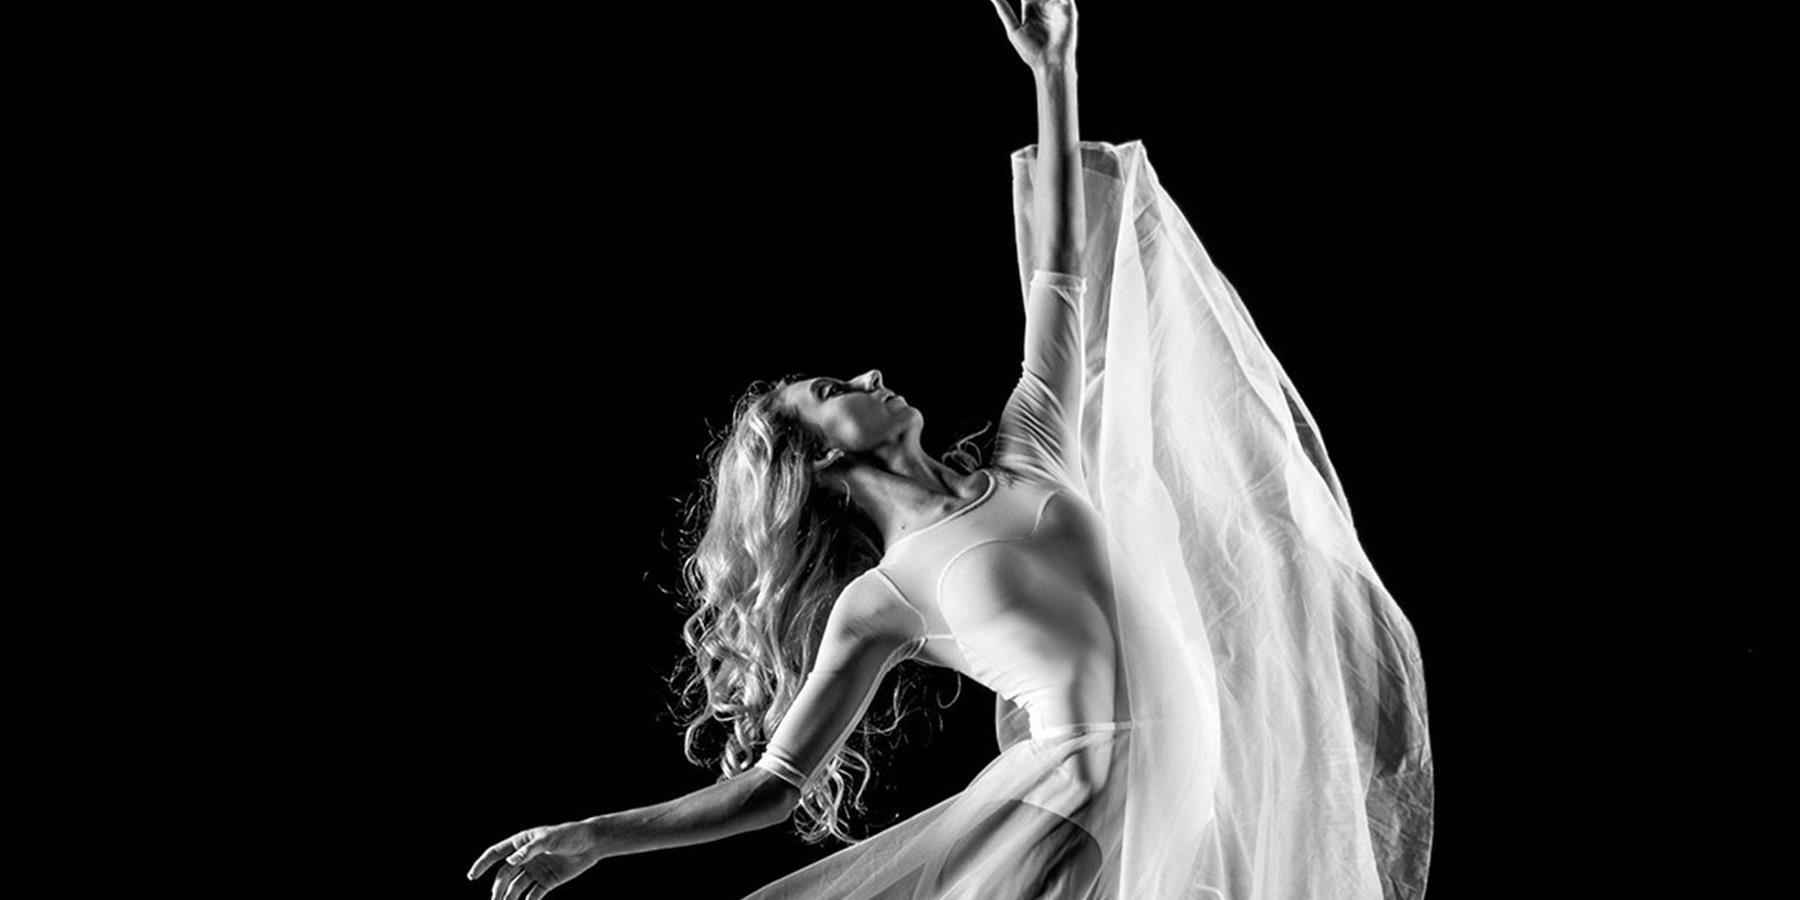 Ballet dancer in flowing dress